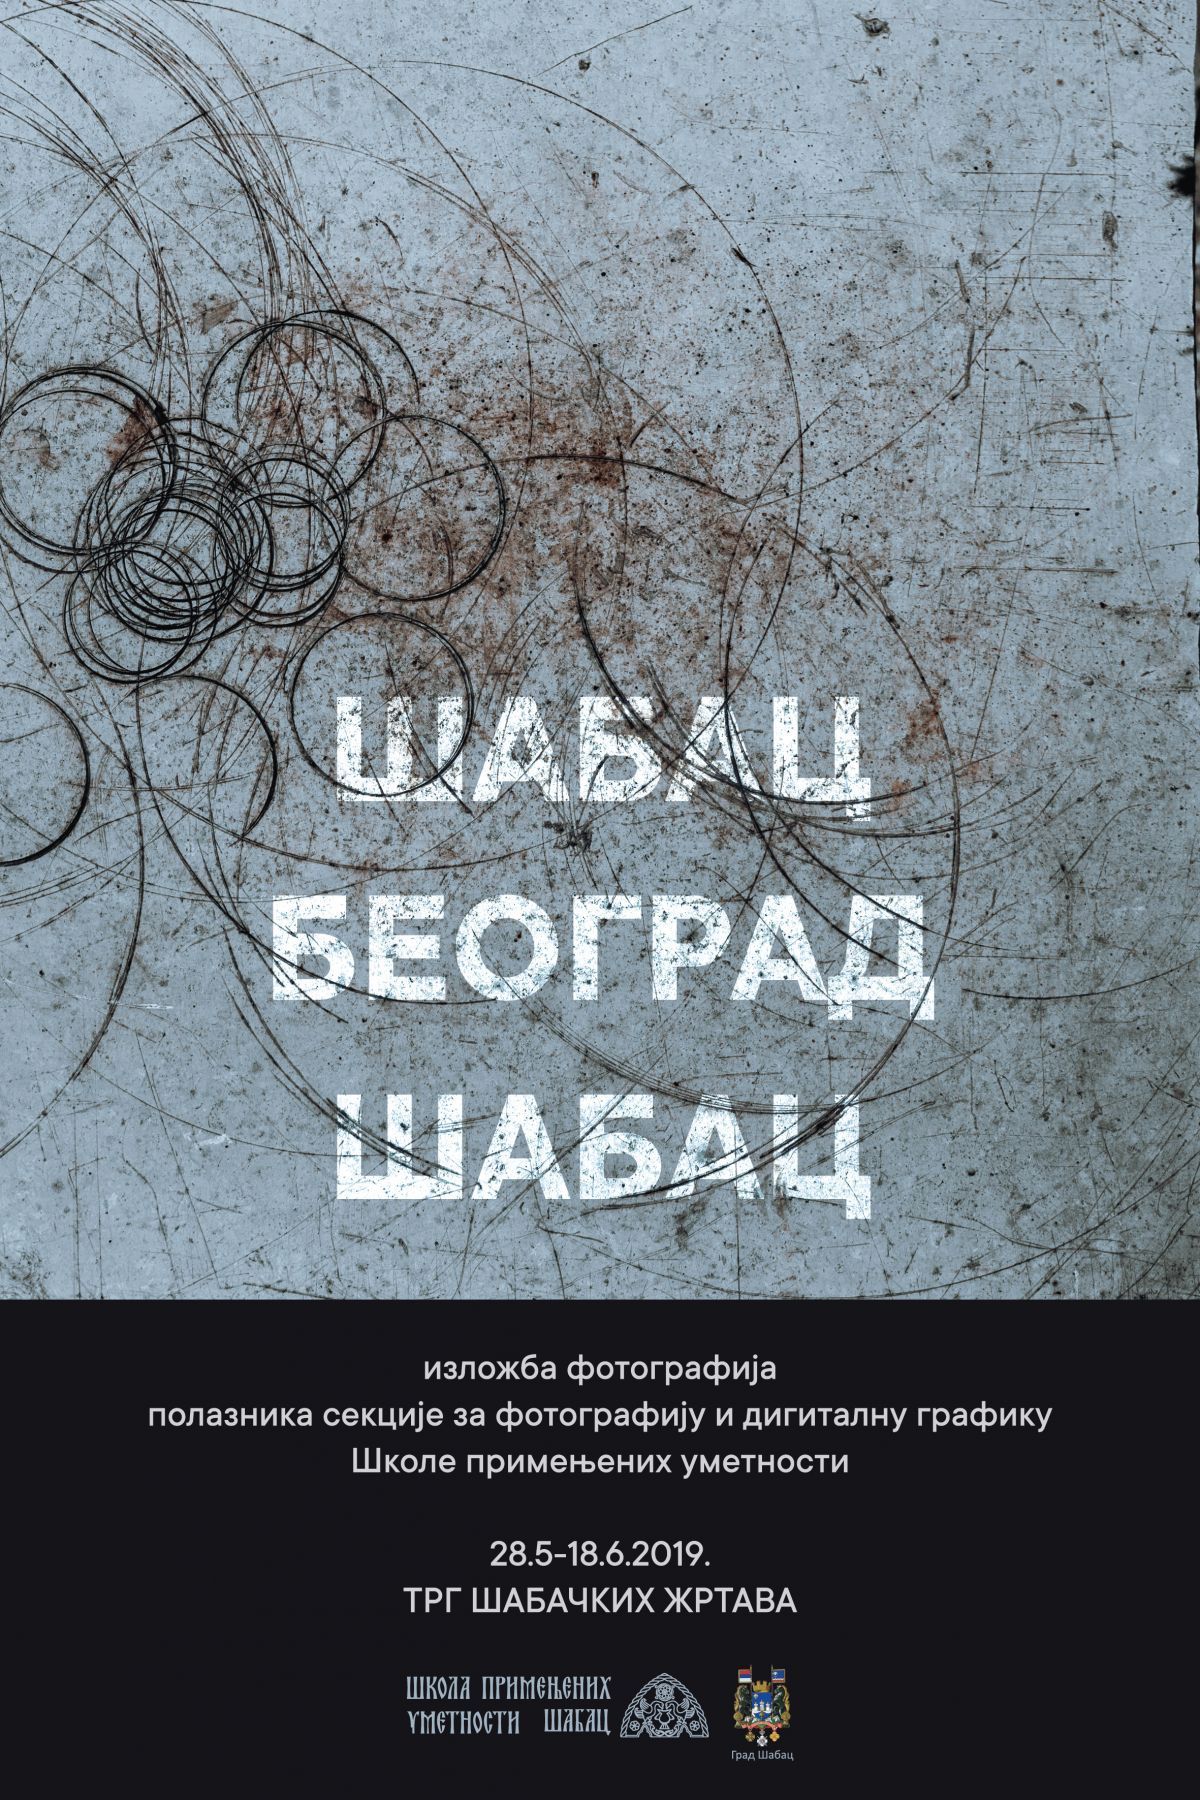 Škola primenjenih umetnosti: Sutra, u Otvorenoj galeriji izložba "Šabac-Beograd-Šabac"